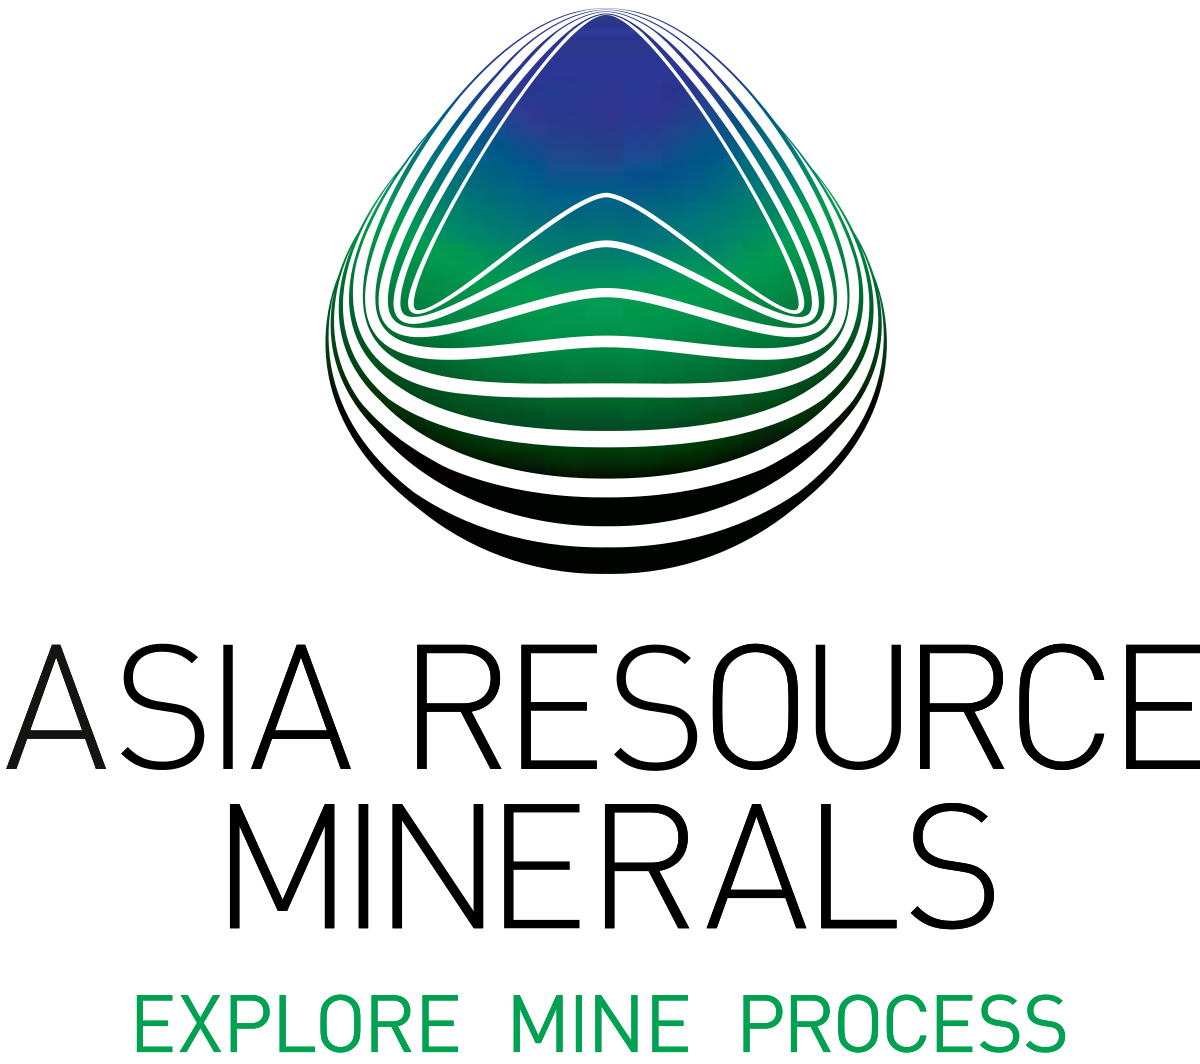 Asia Resource Minerals